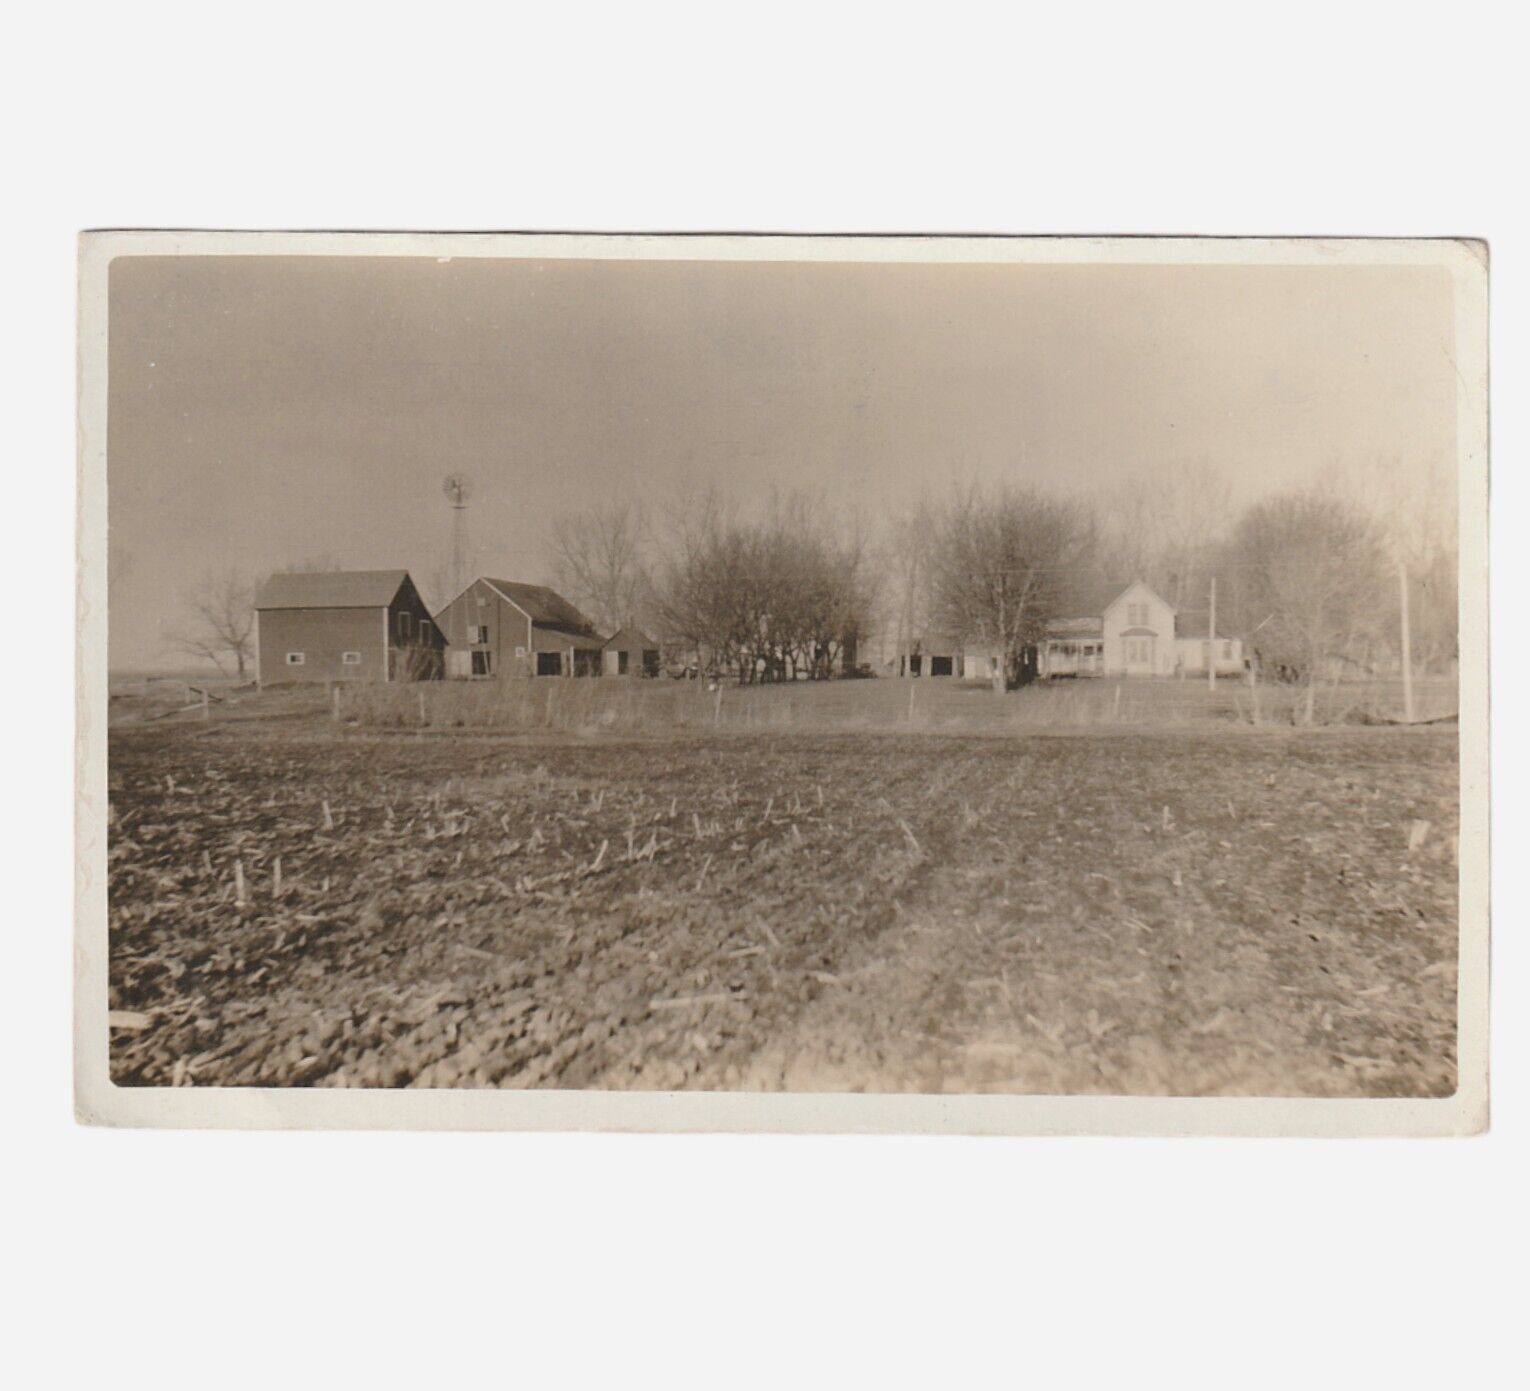 1901 Farm House Rppc Postcard Rural